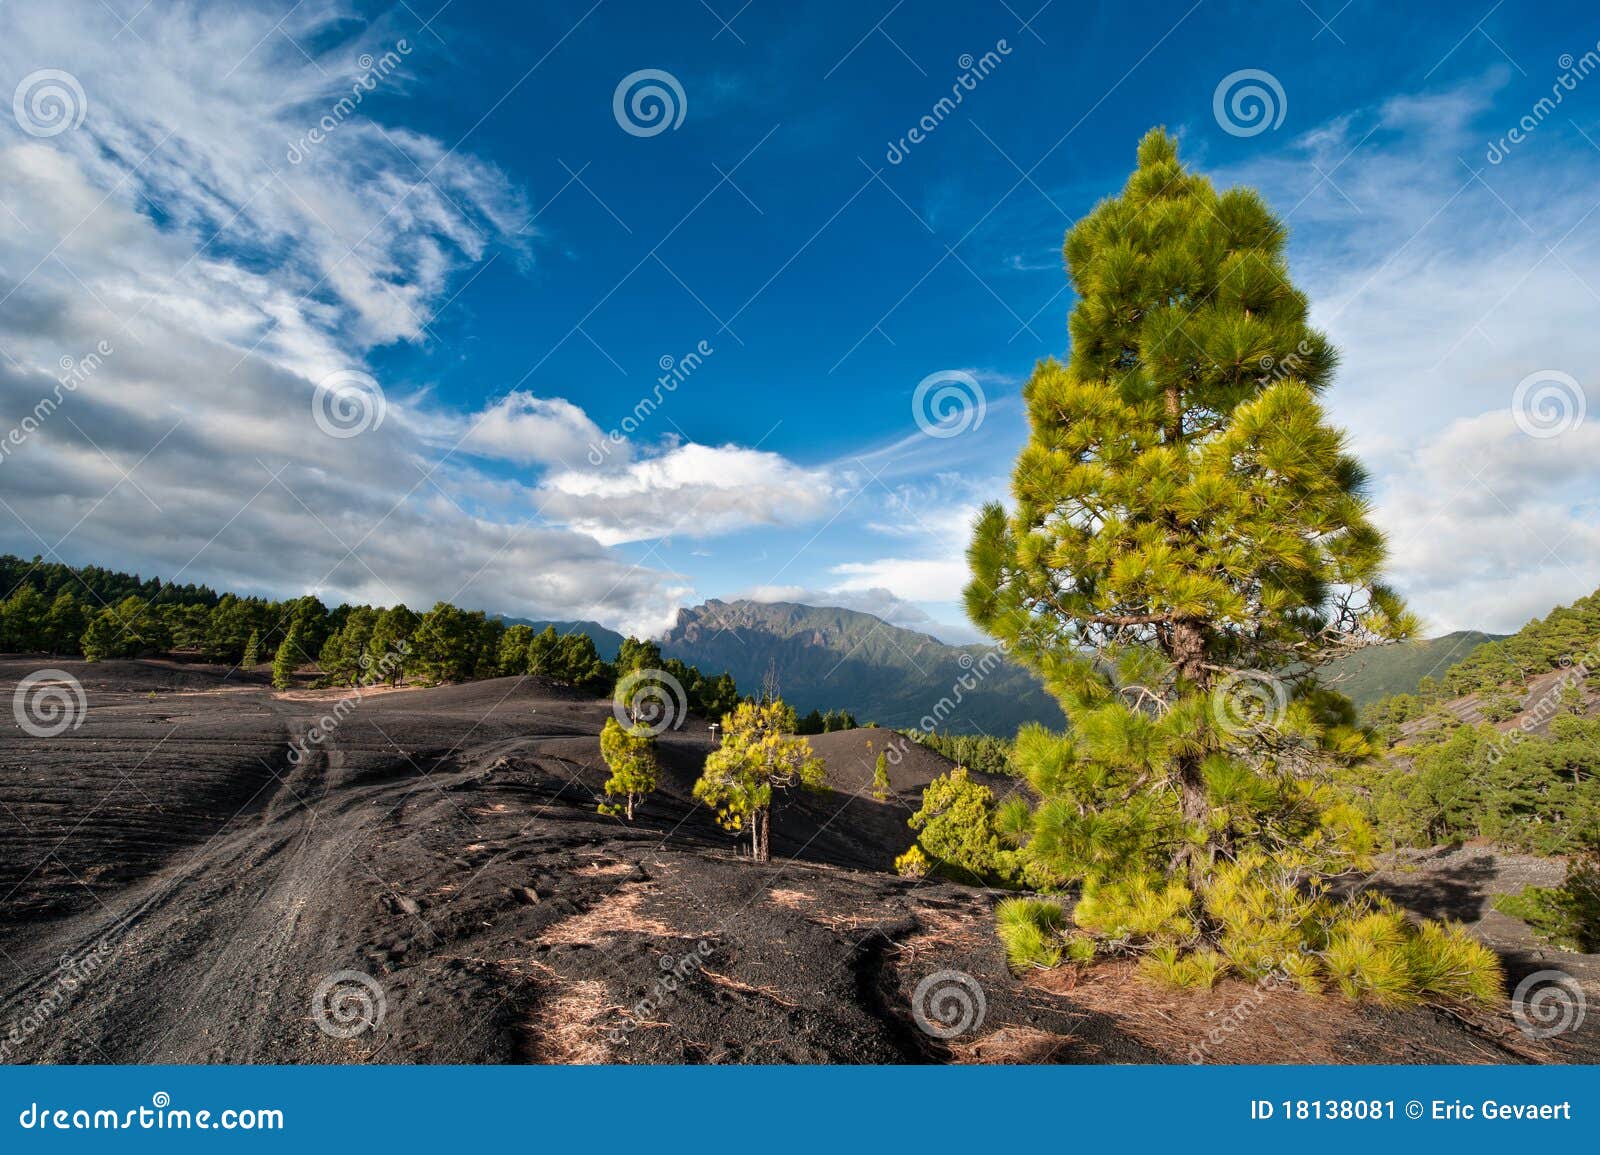 lava landscape on the cumbre nueva in la palma